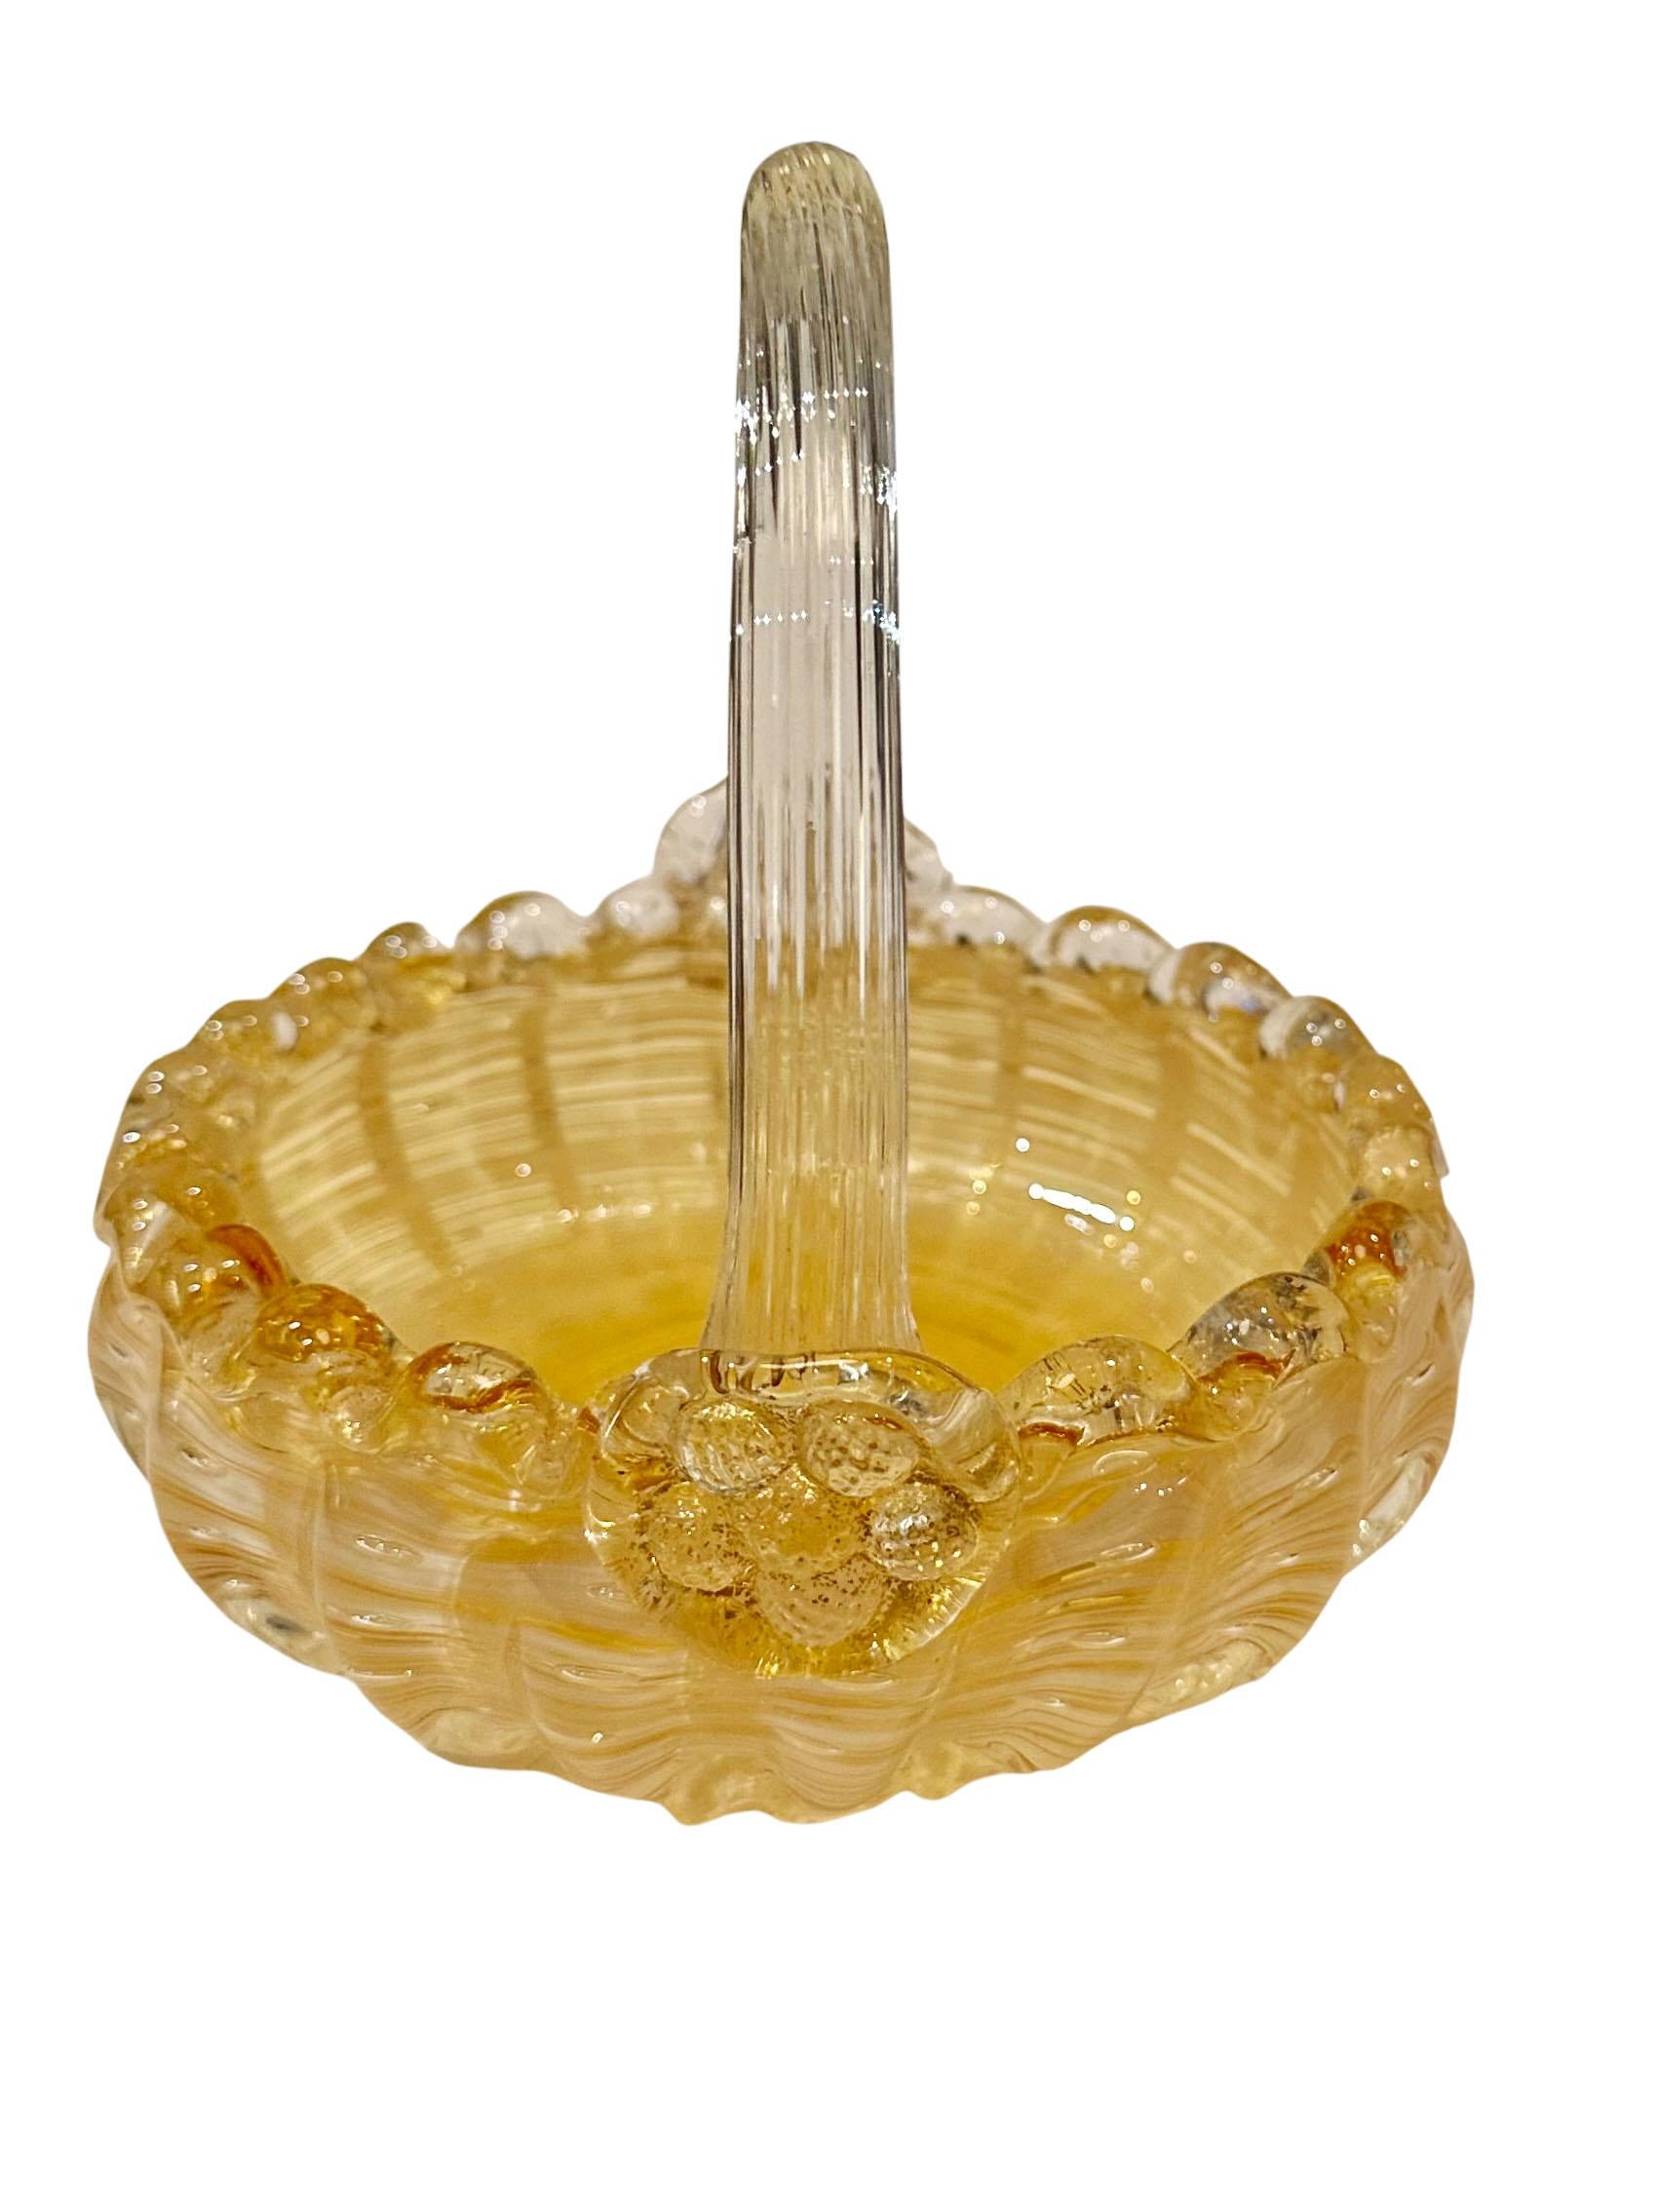 Korb aus Murano-Glas, Süßigkeitenschale. An den Rändern eingeschnürt, um eine gekräuselte Kante zu erhalten. Schönes Gelb mit einem transparenten Griff. Das wird Ihre Gäste mit Sicherheit begeistern. CIRCA 1950er Jahre, Italien.
